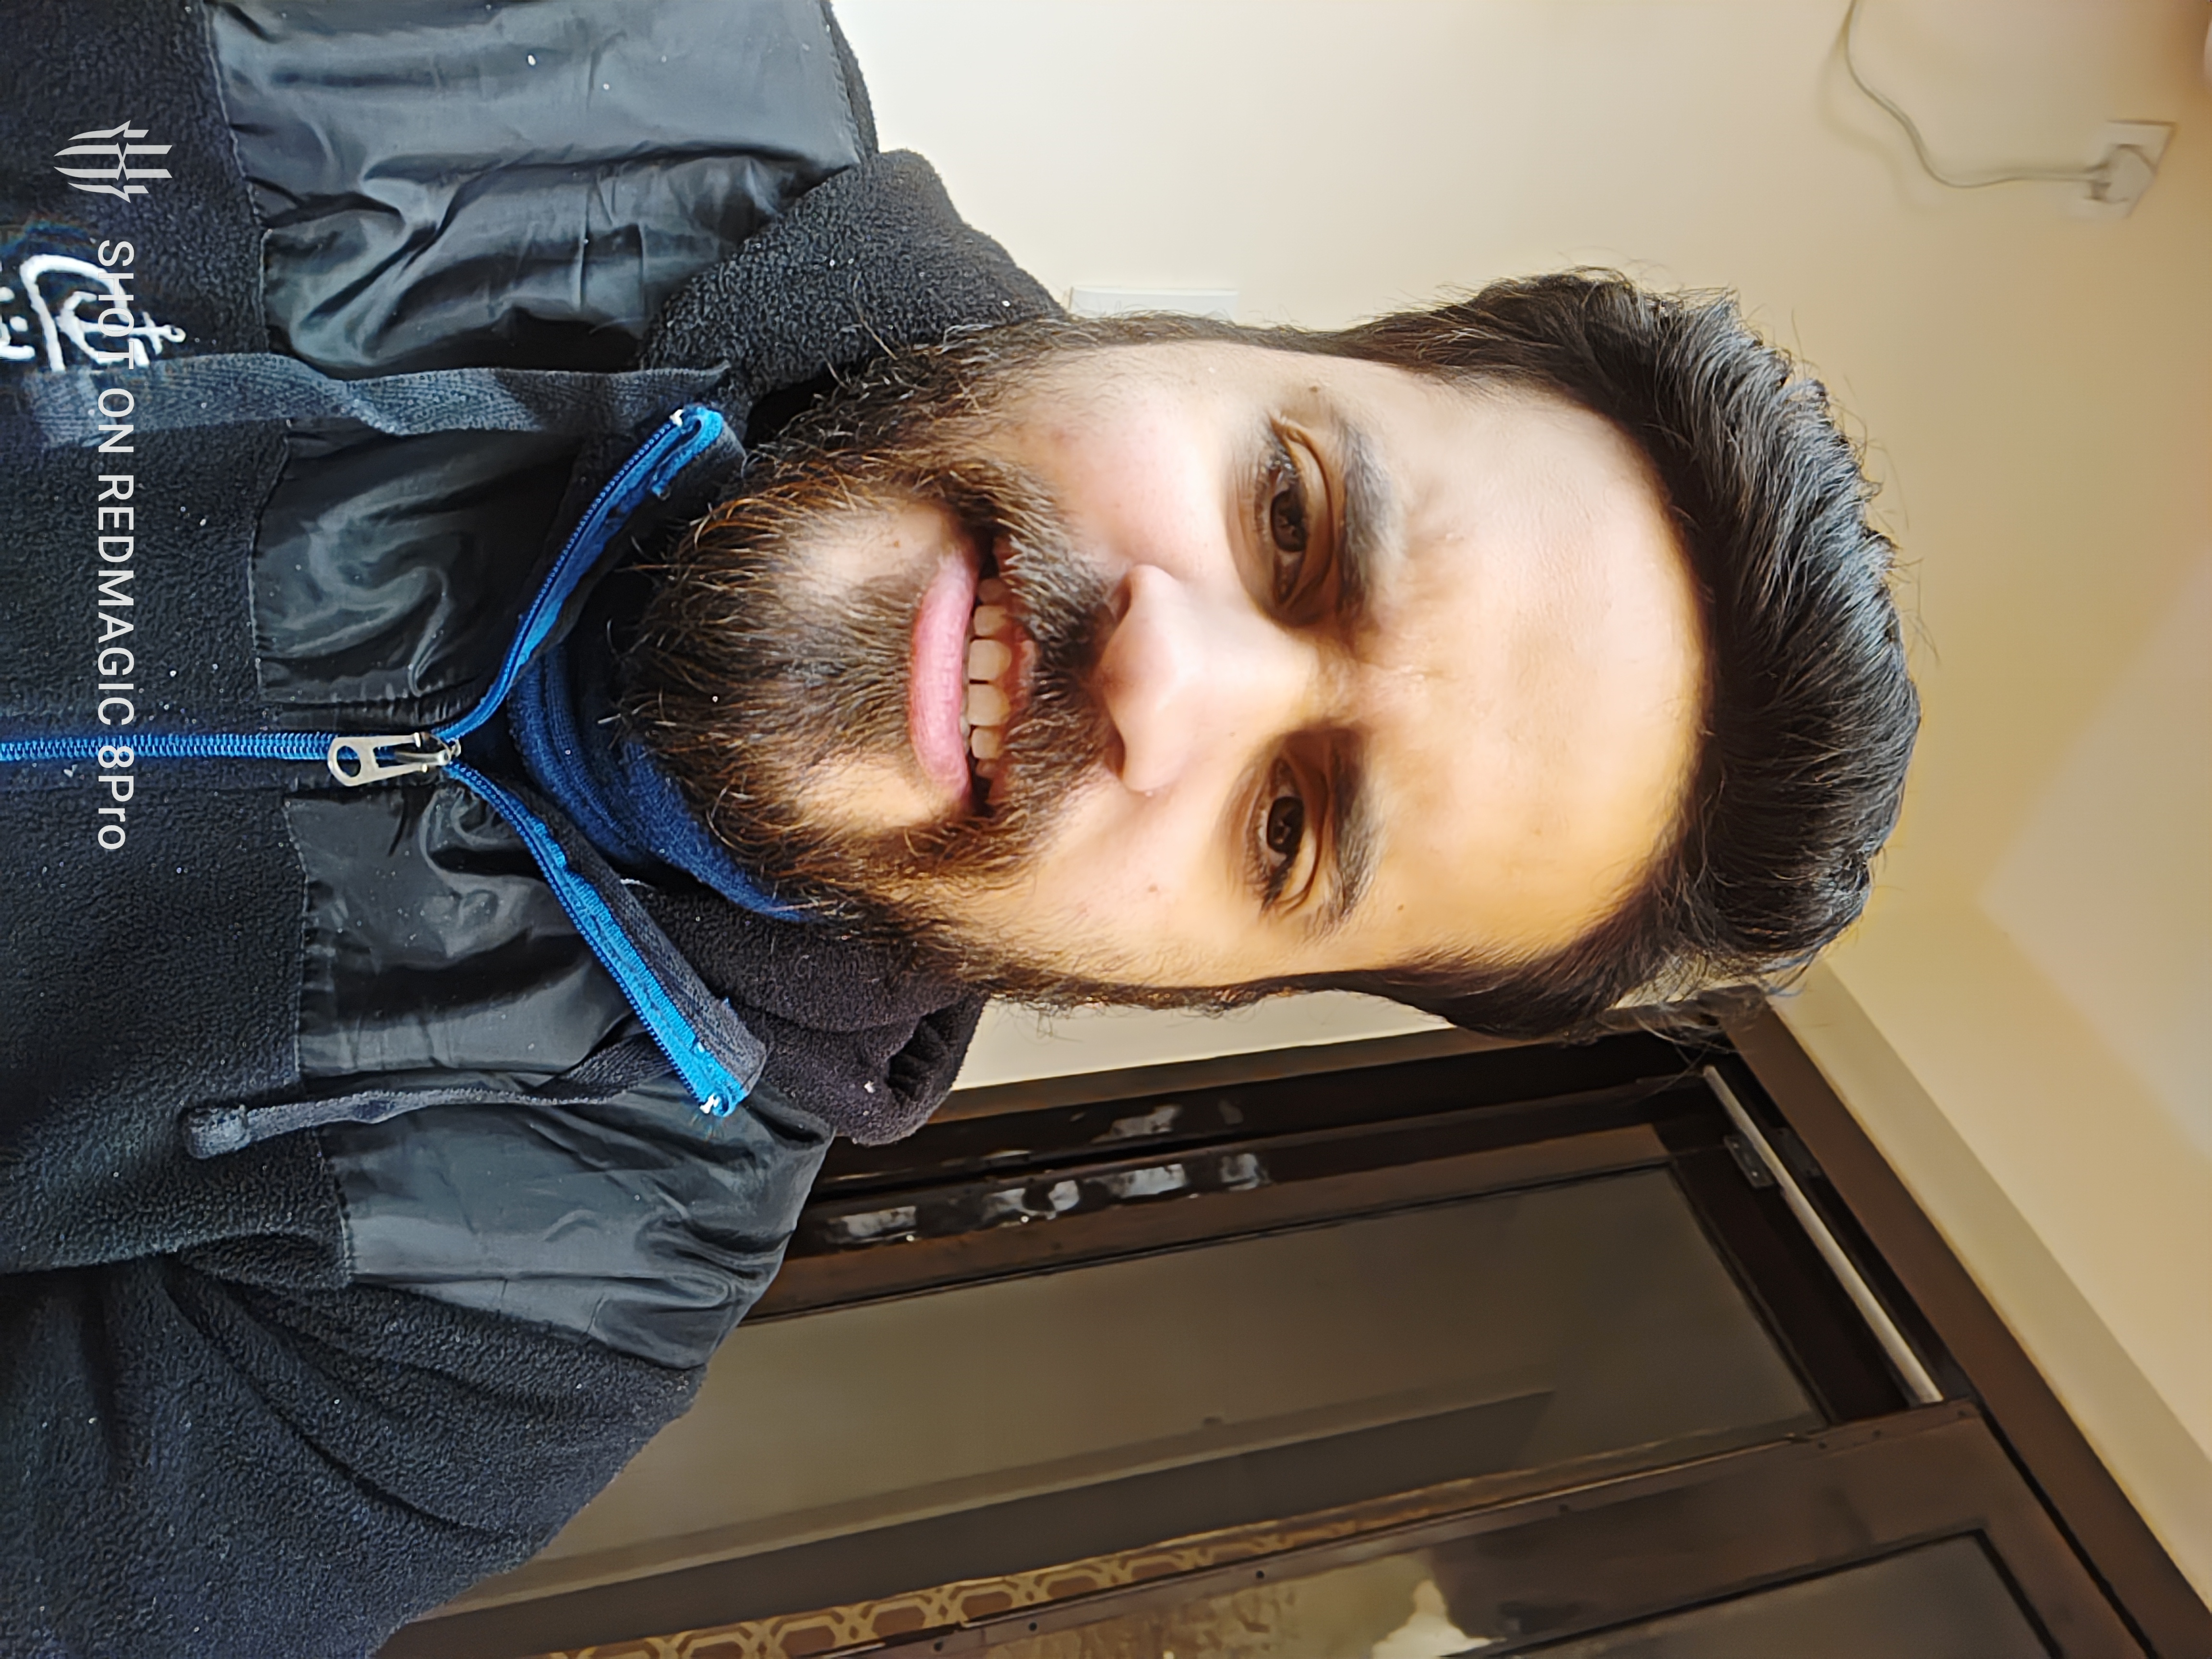 Prakhar Khanna selfie on RedMagic 8 Pro.